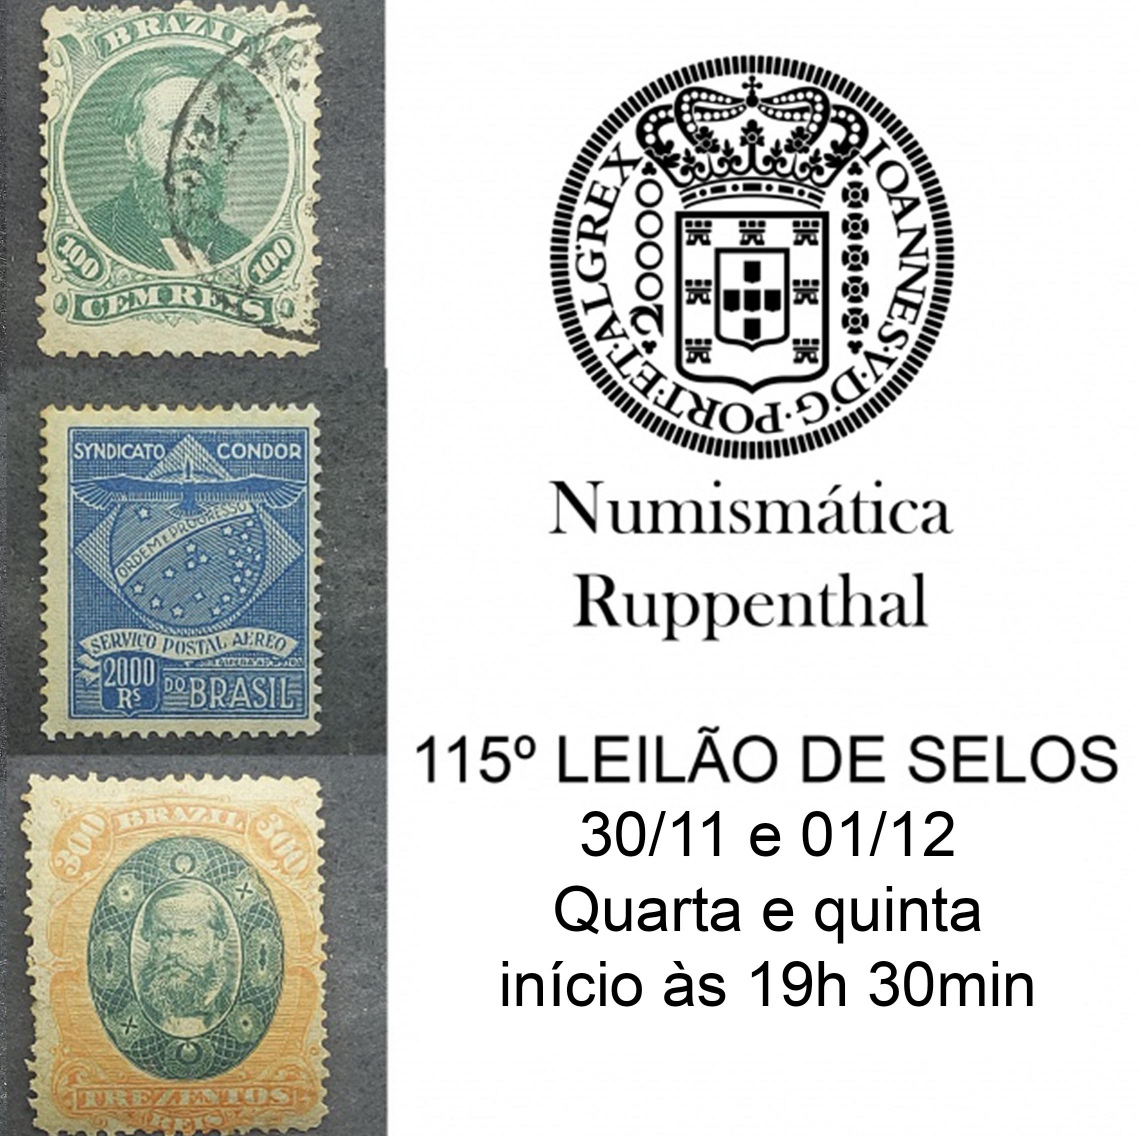 115º LEILÃO DE FILATELIA E NUMISMÁTICA - Numismática Ruppenthal